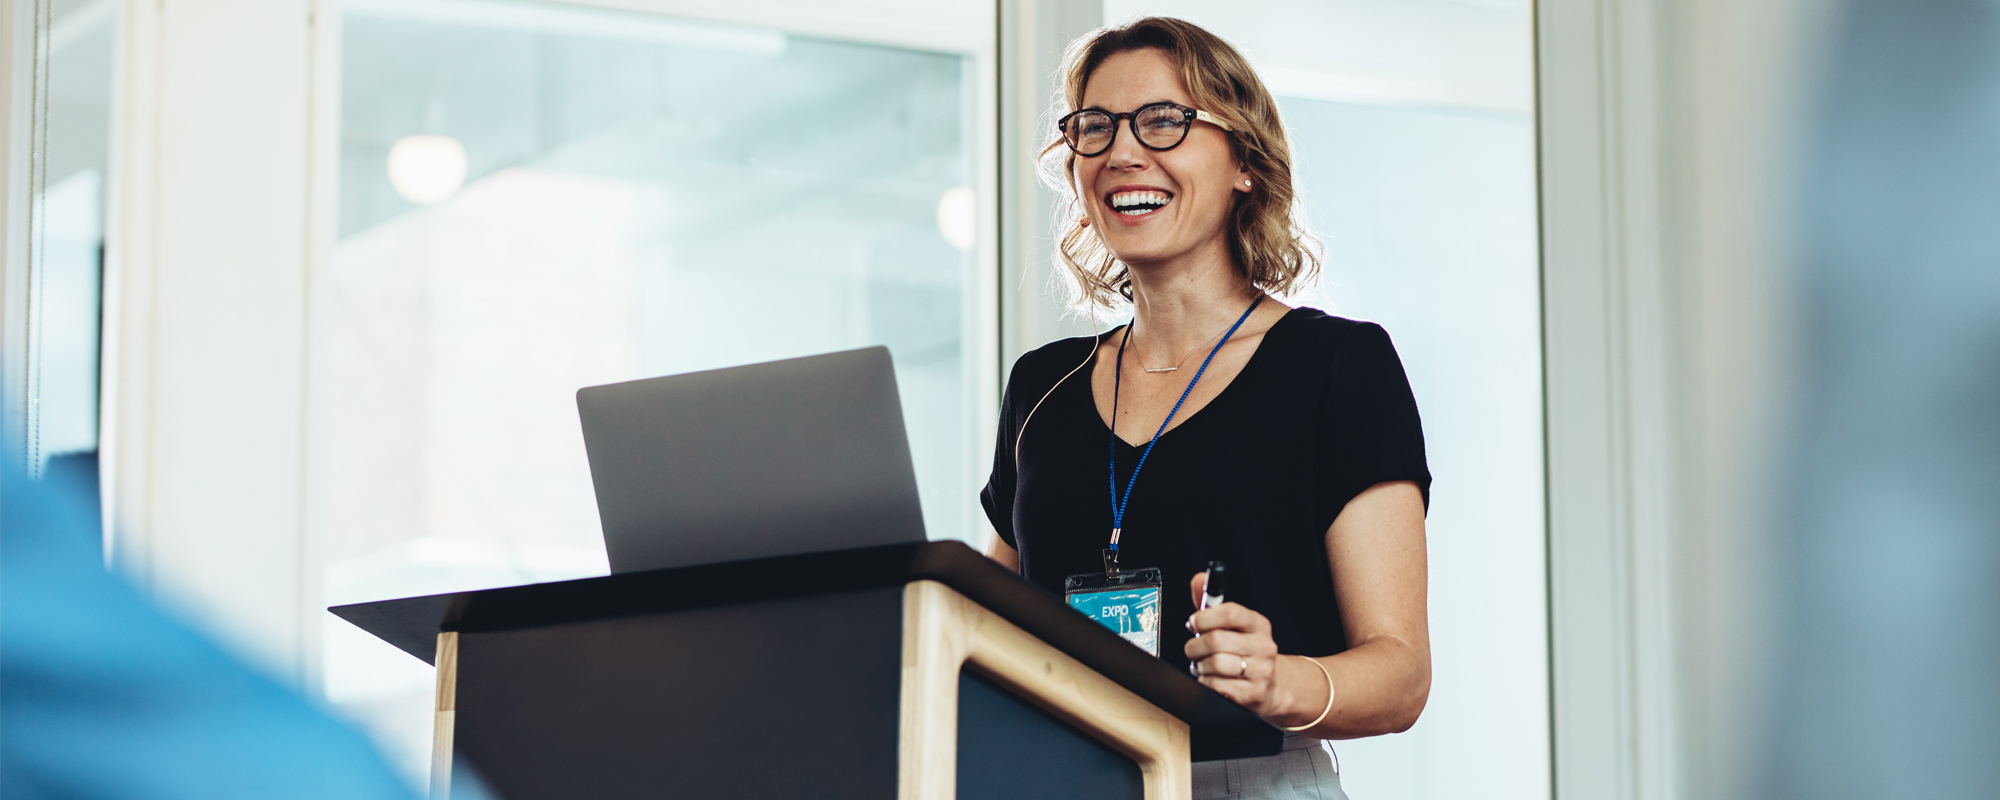 junge blonde Frau mit Brille steht lachend an Rednerpult, aufgeklappter Laptop für Präsentation steht am Pult